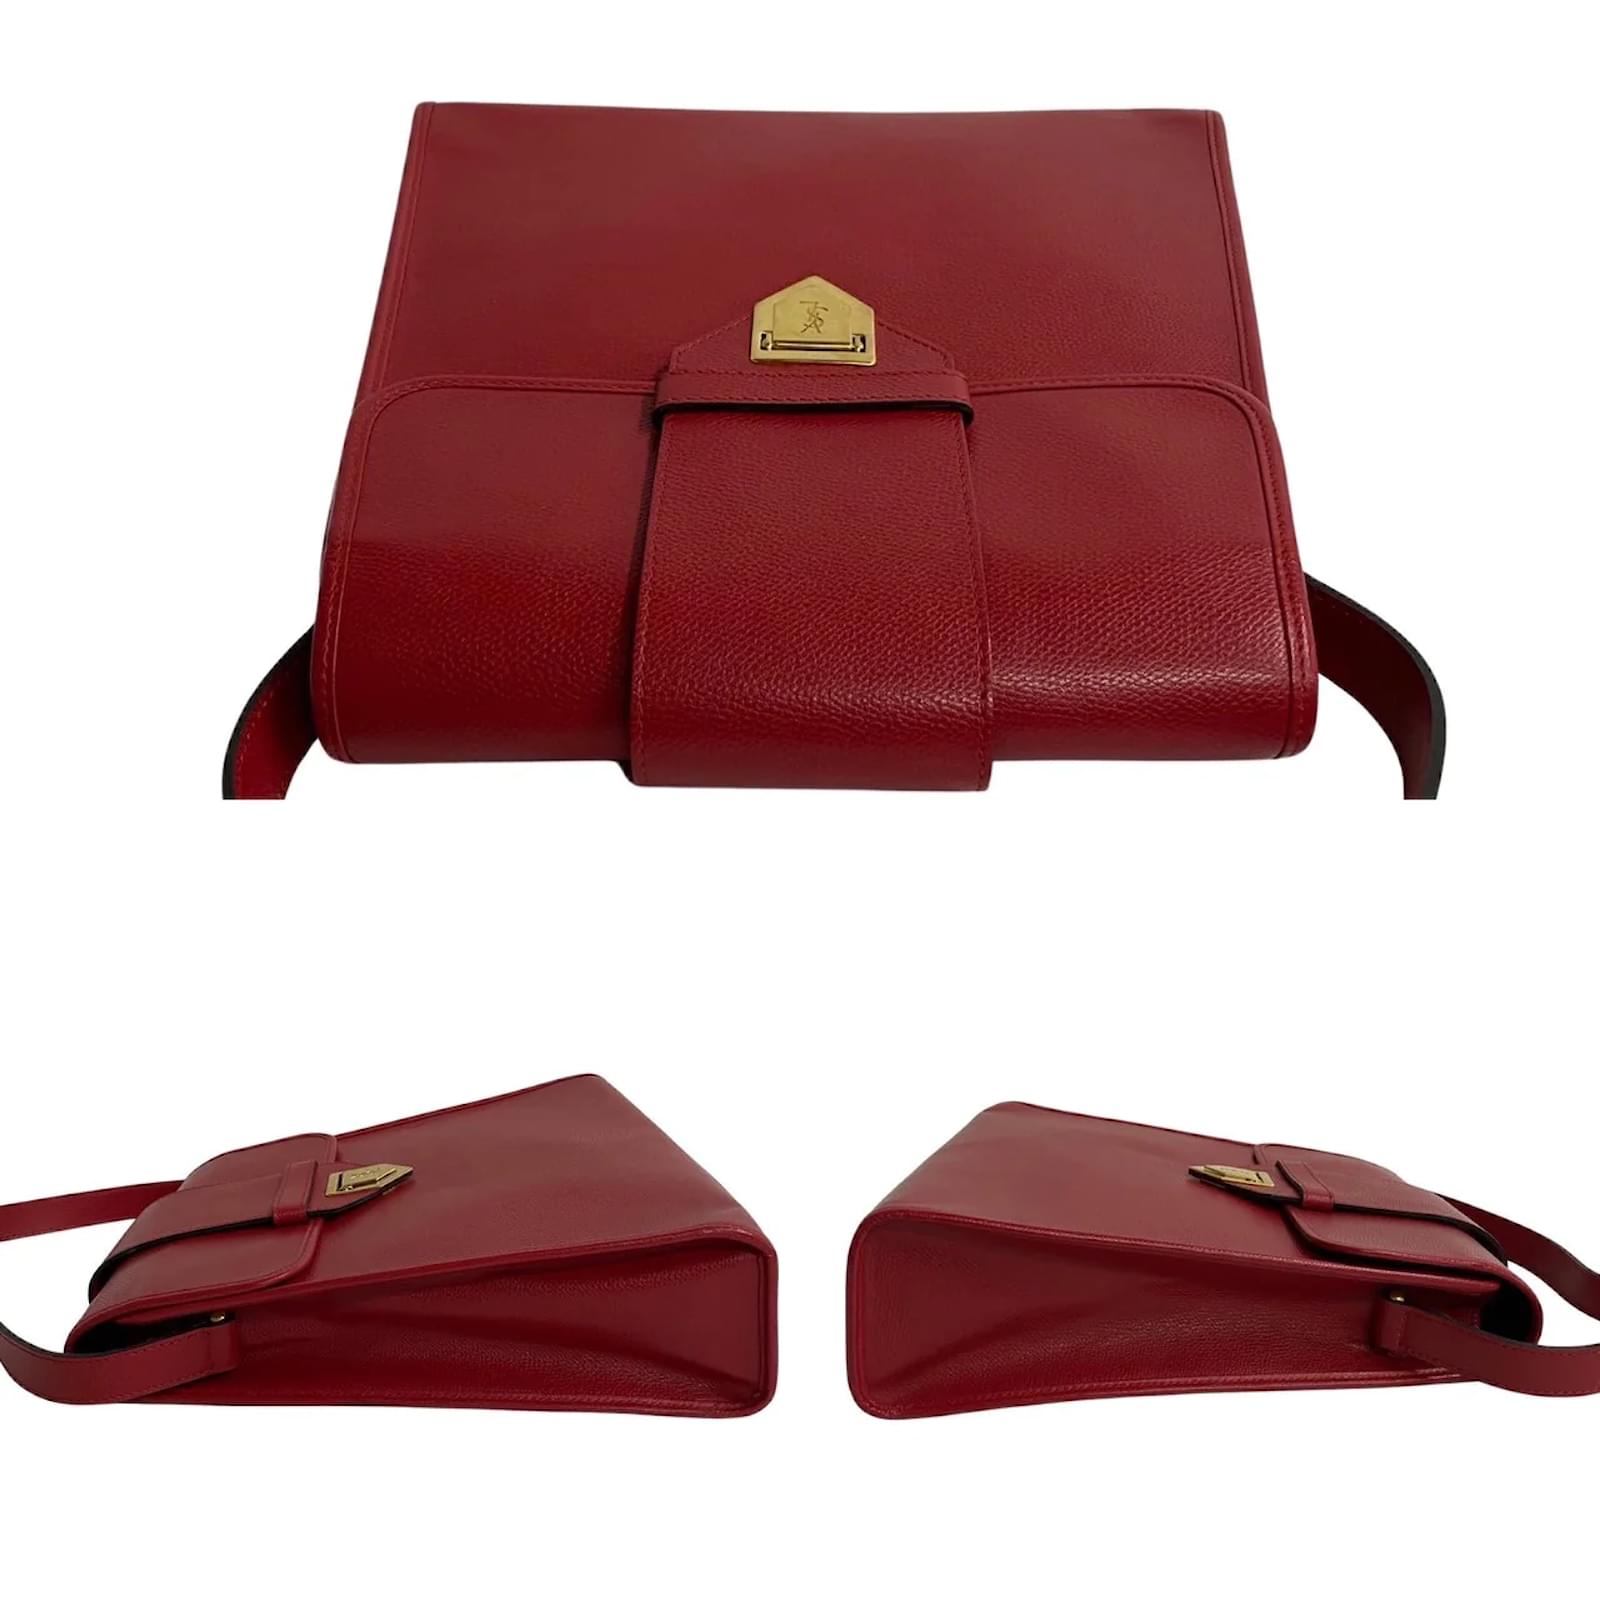 YVES SAINT LAURENT Red Patent Leather Belle De Jour Flap Compact Walle